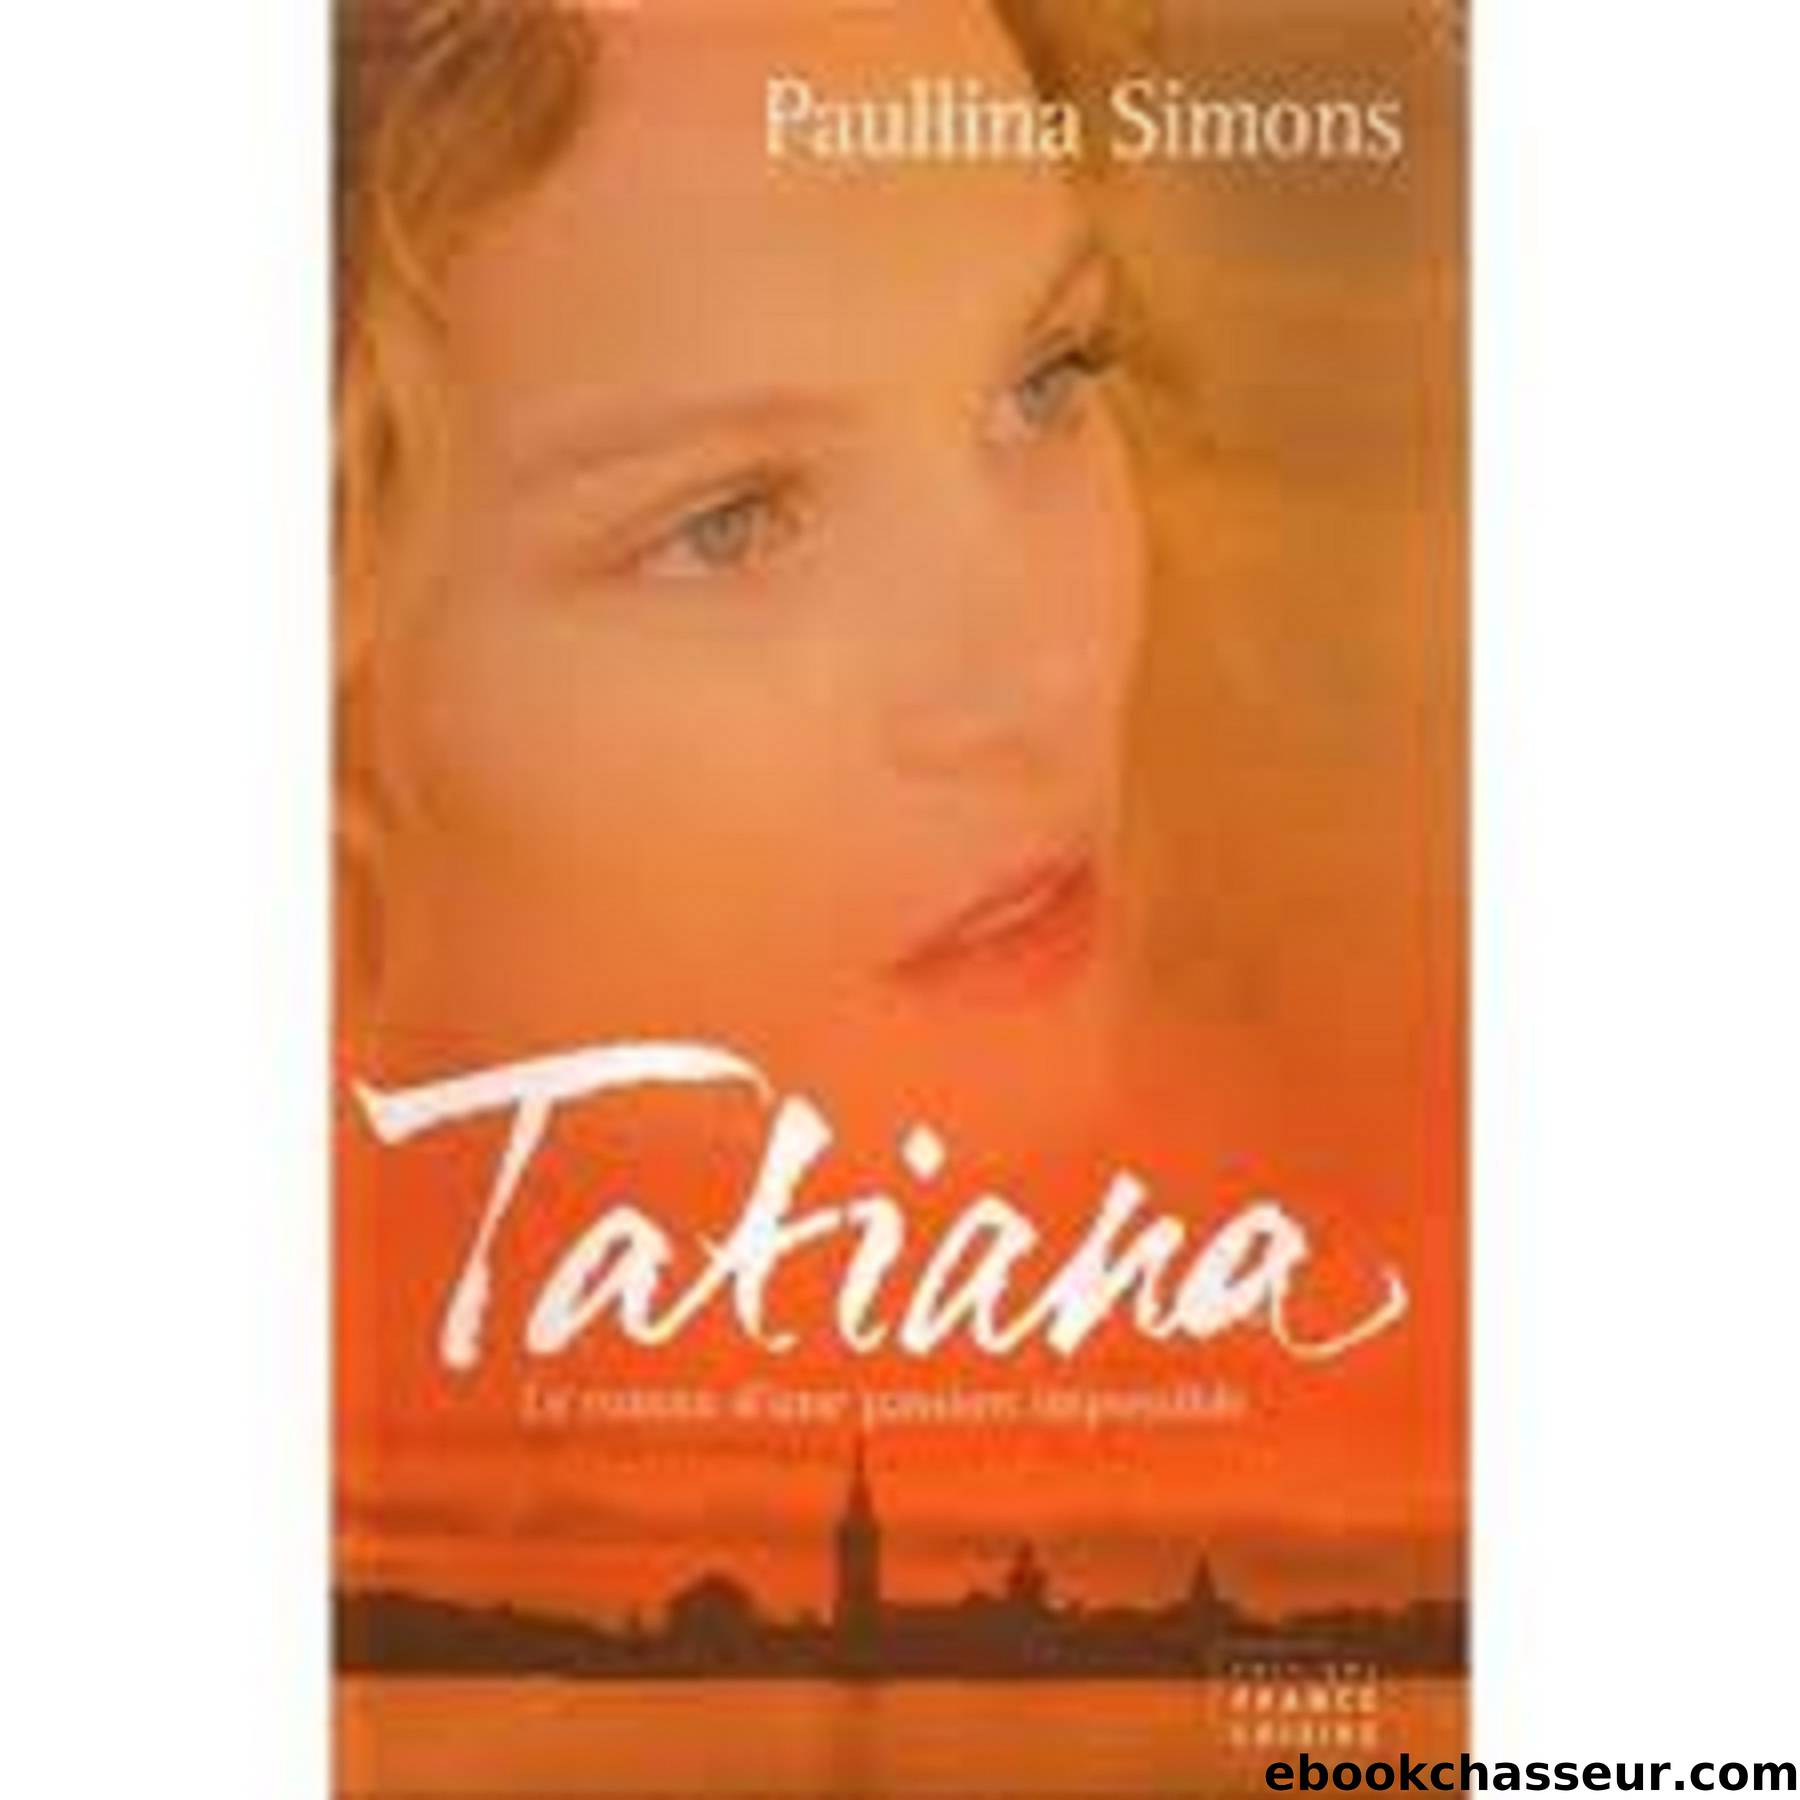 Tatiana tome 1 by Paullina Simons